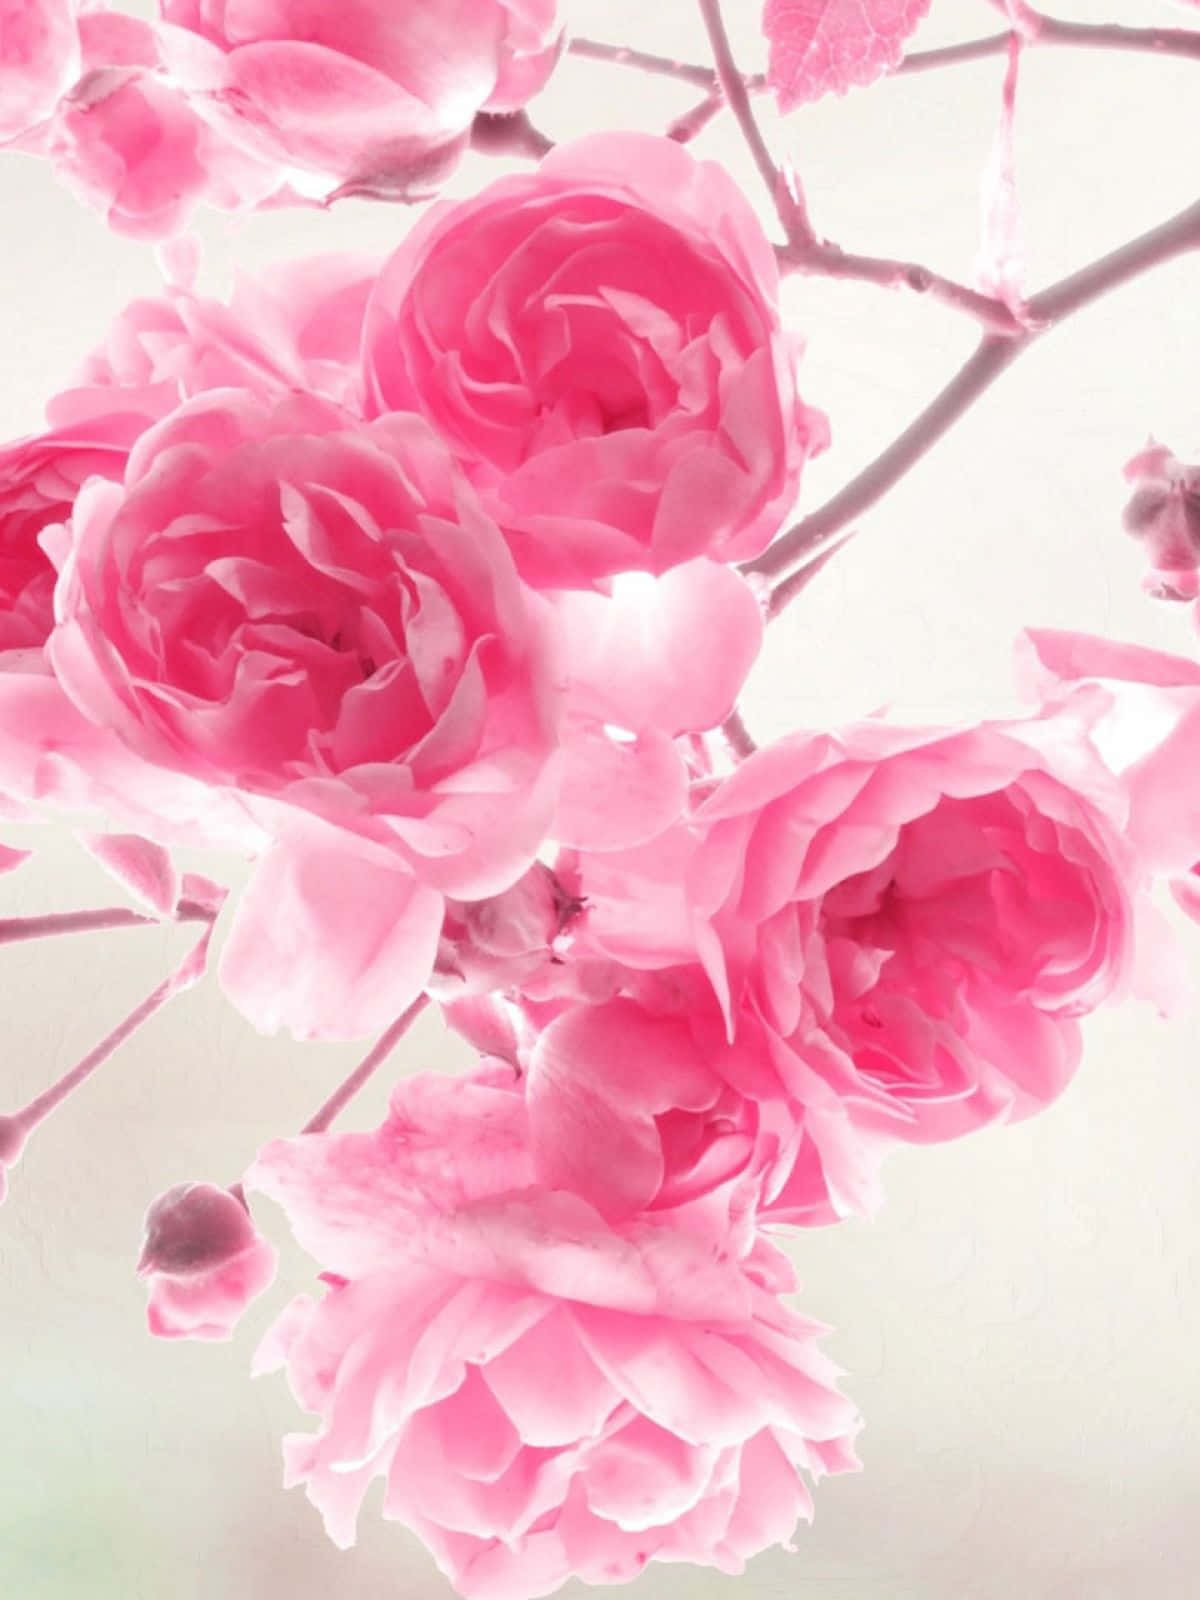 Красивые картинки с цветами для телефона. Розовый цвет. Розовые цветы. Нежные розовые цветы. Цветочек розовый.